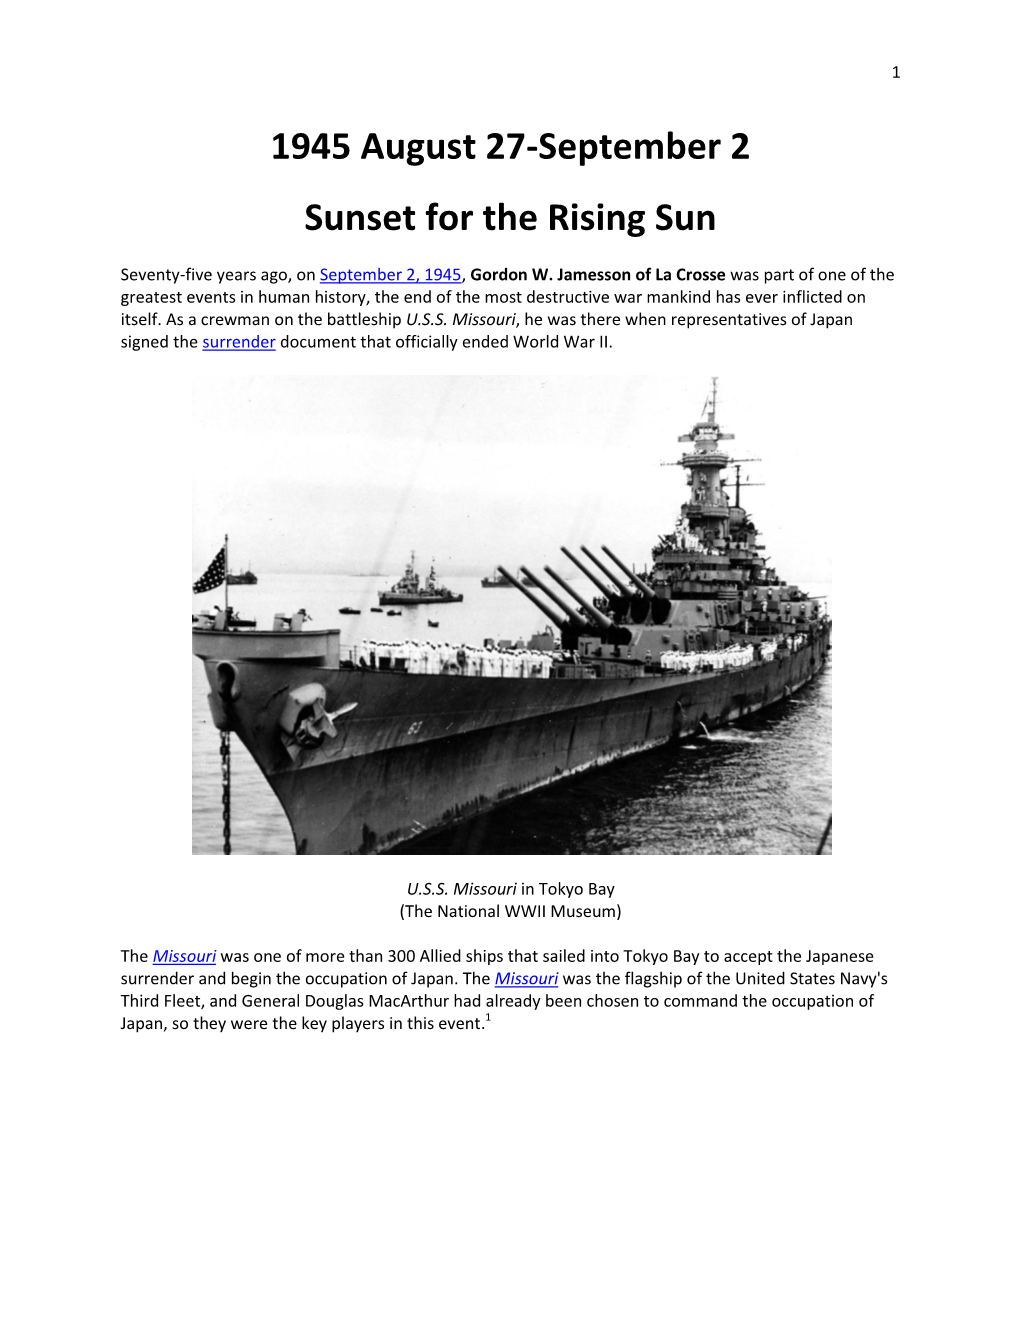 1945 August 27-September 2 Sunset for the Rising